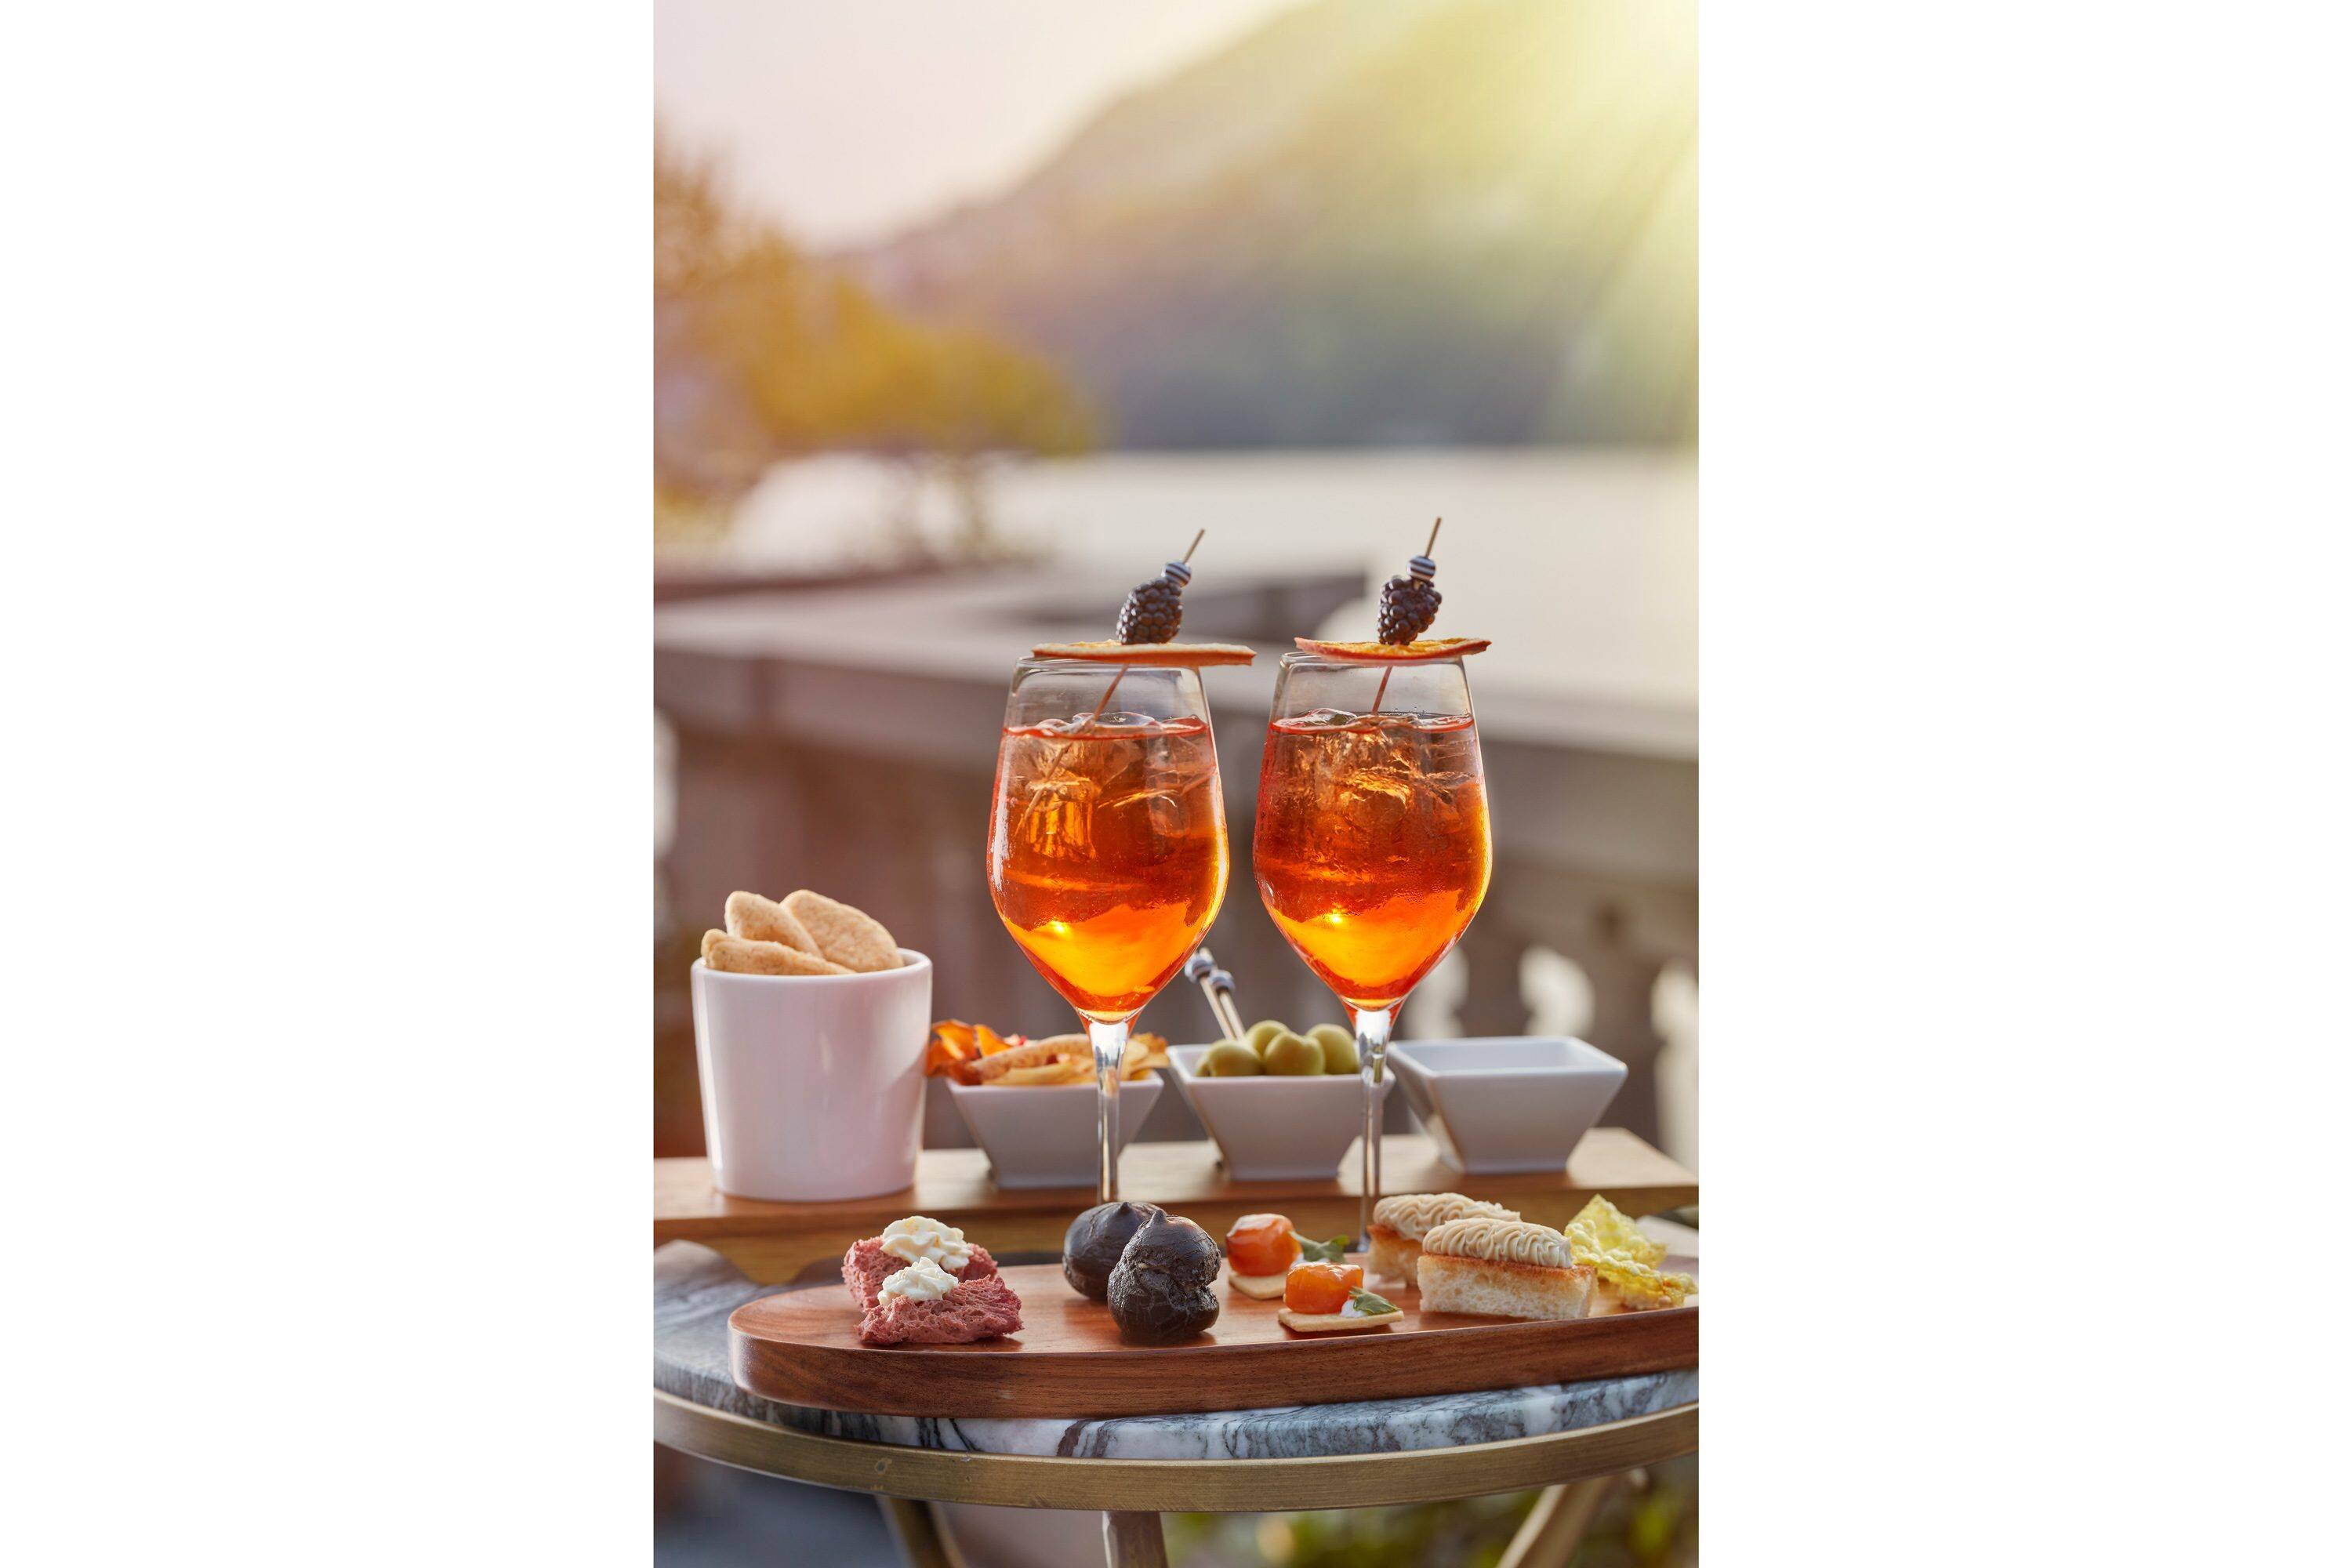 Campari sodas with a vista of Lake Como